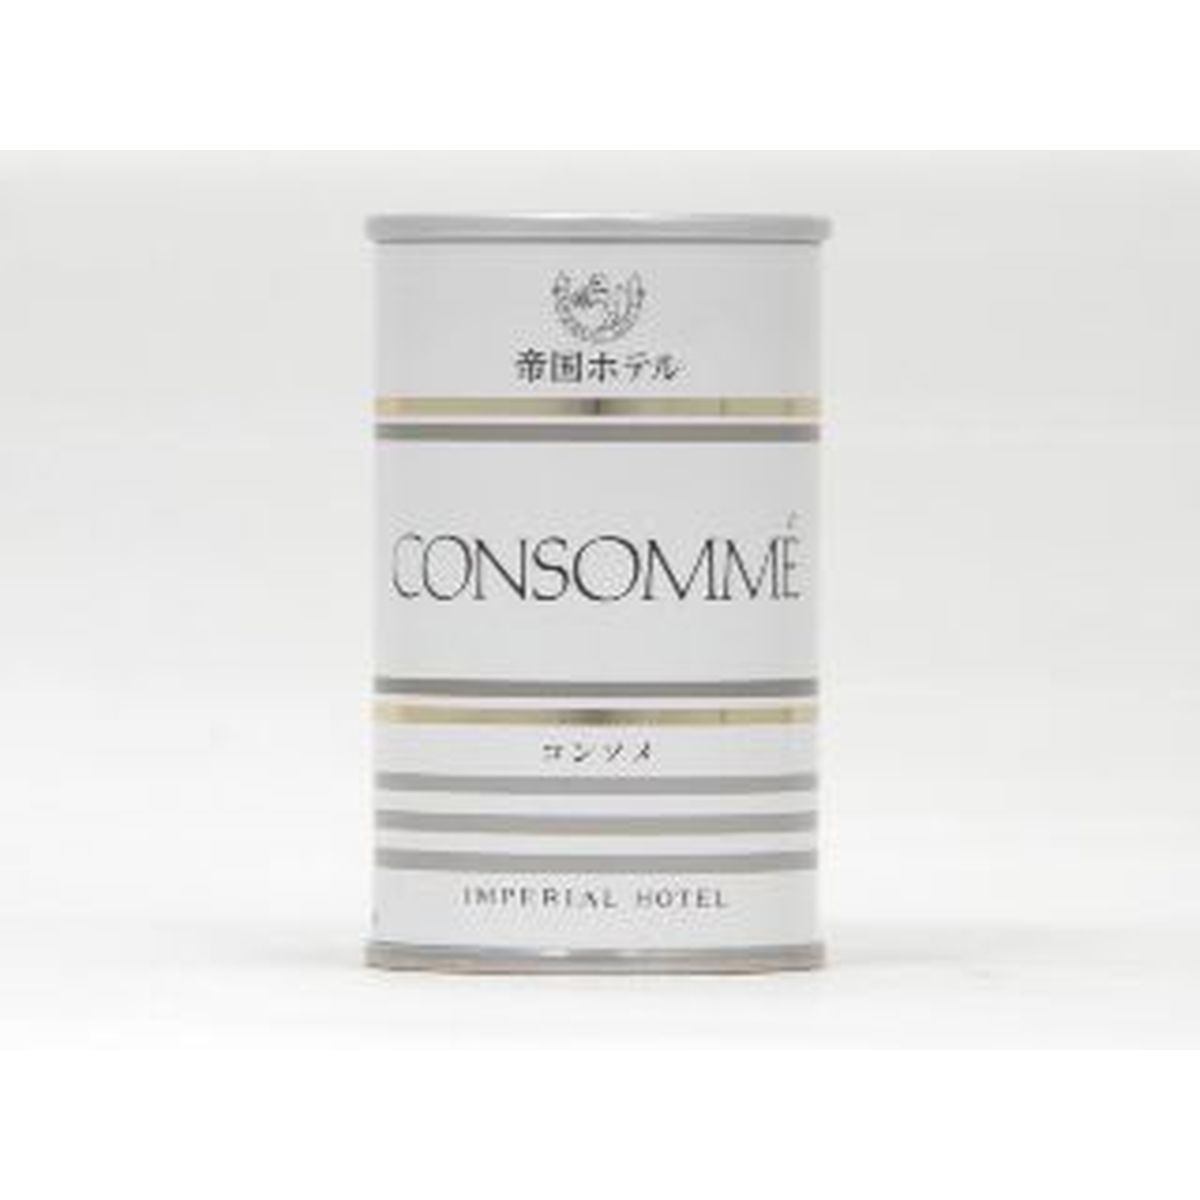 【30個入リ】帝国ホテル コンソメスープ 160g